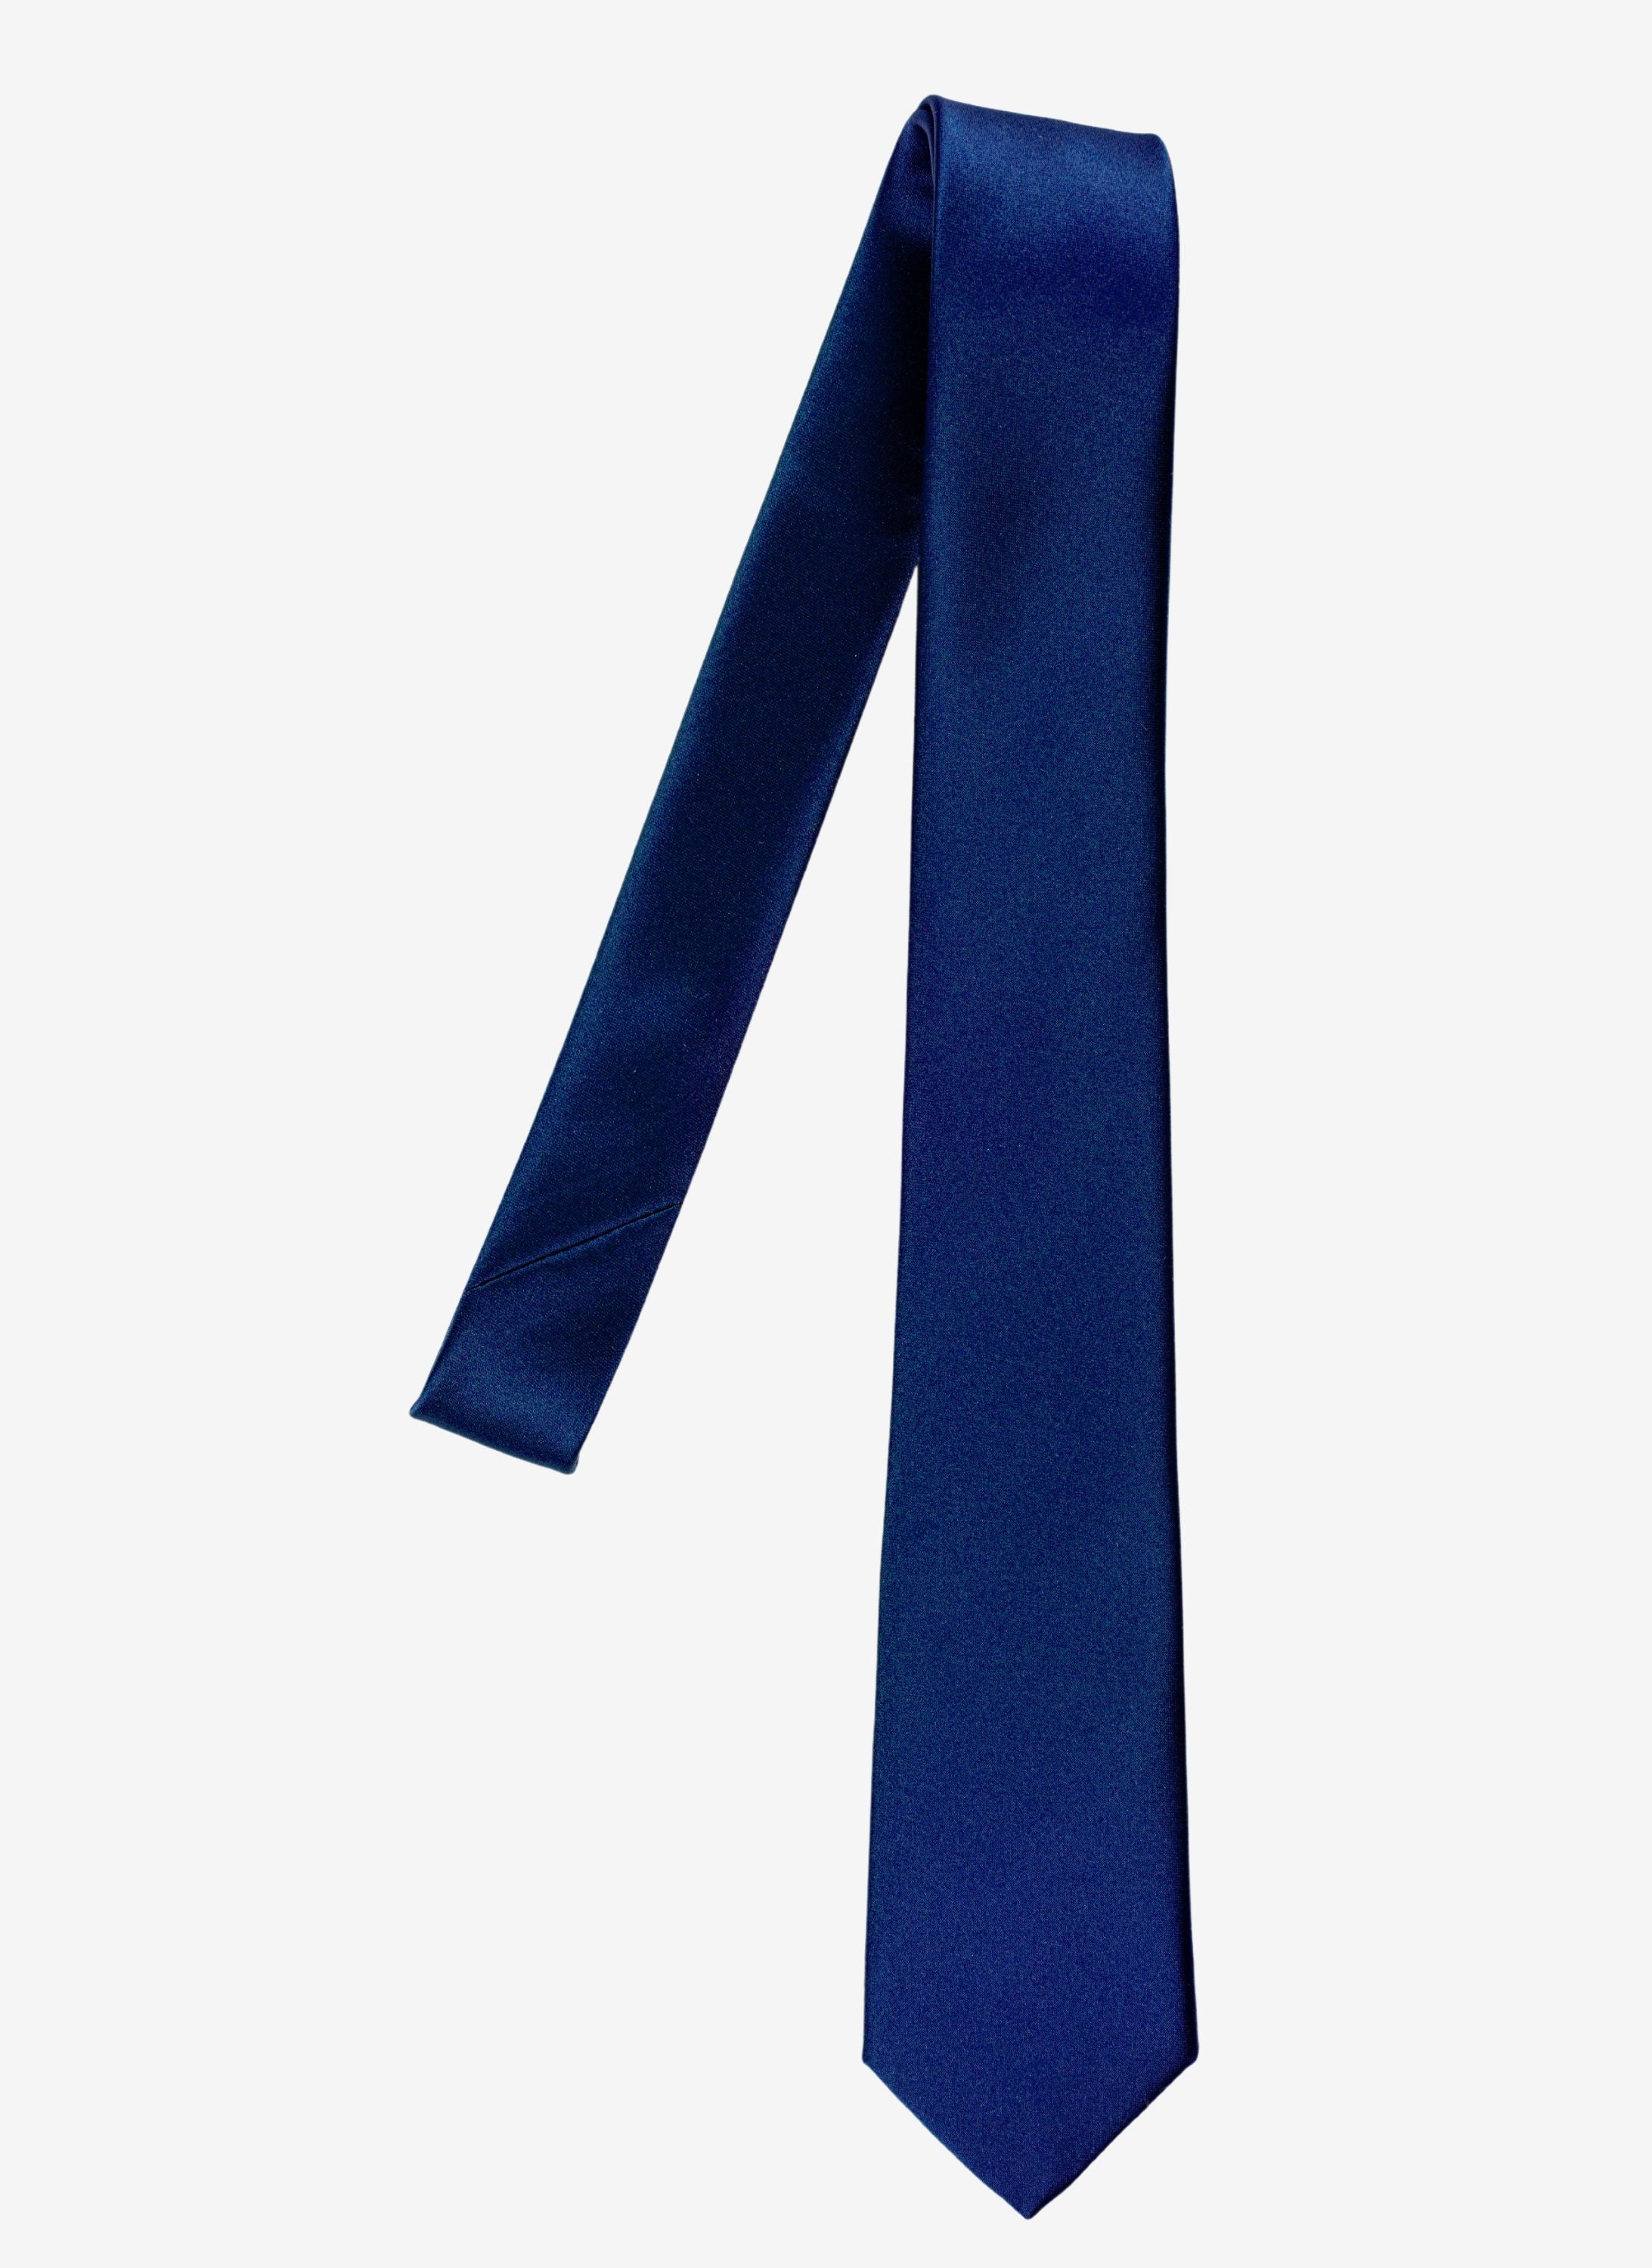 Elegante Krawatte in Blau.